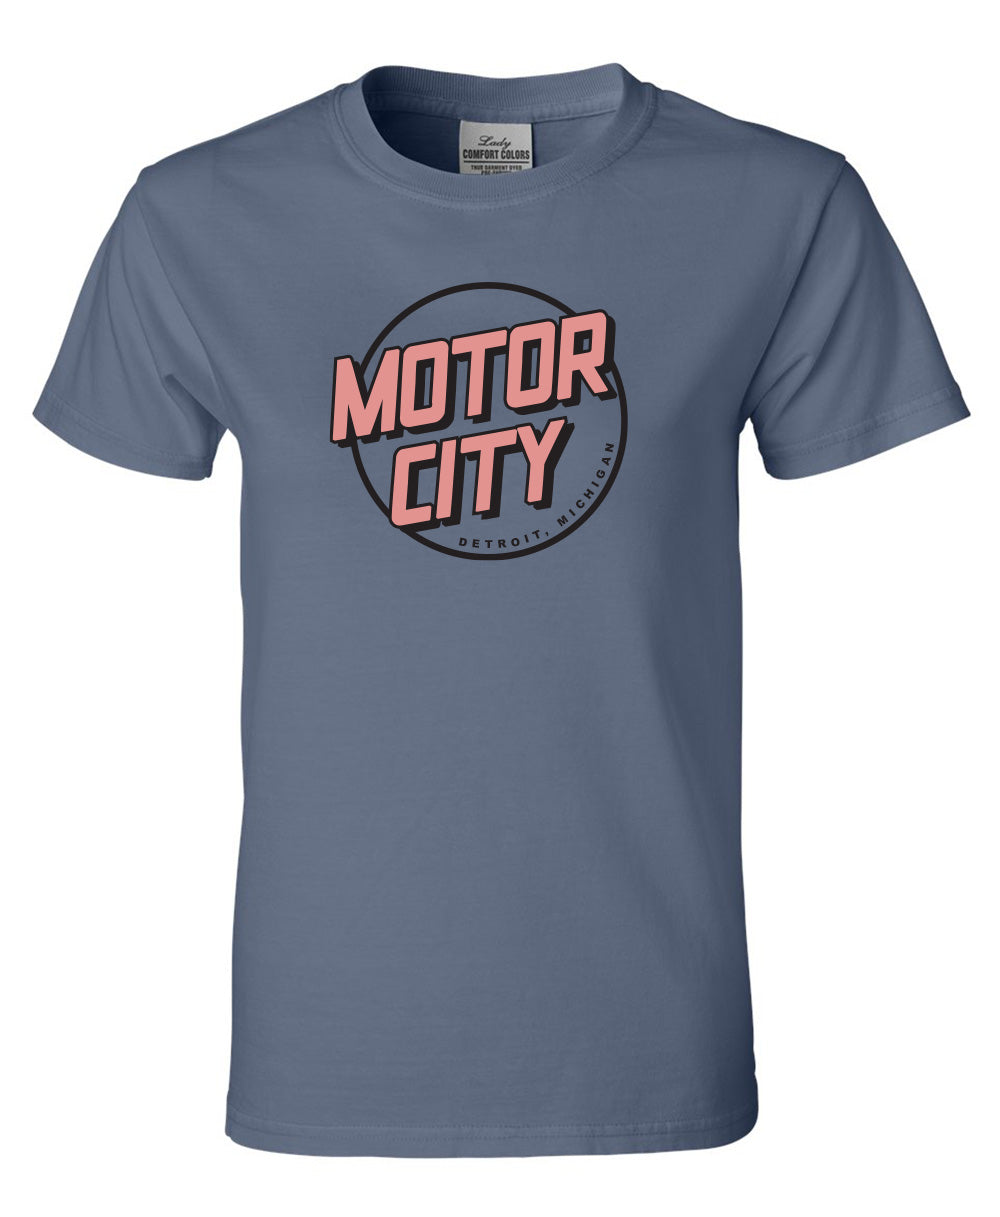 Motor City - Ladies Tee